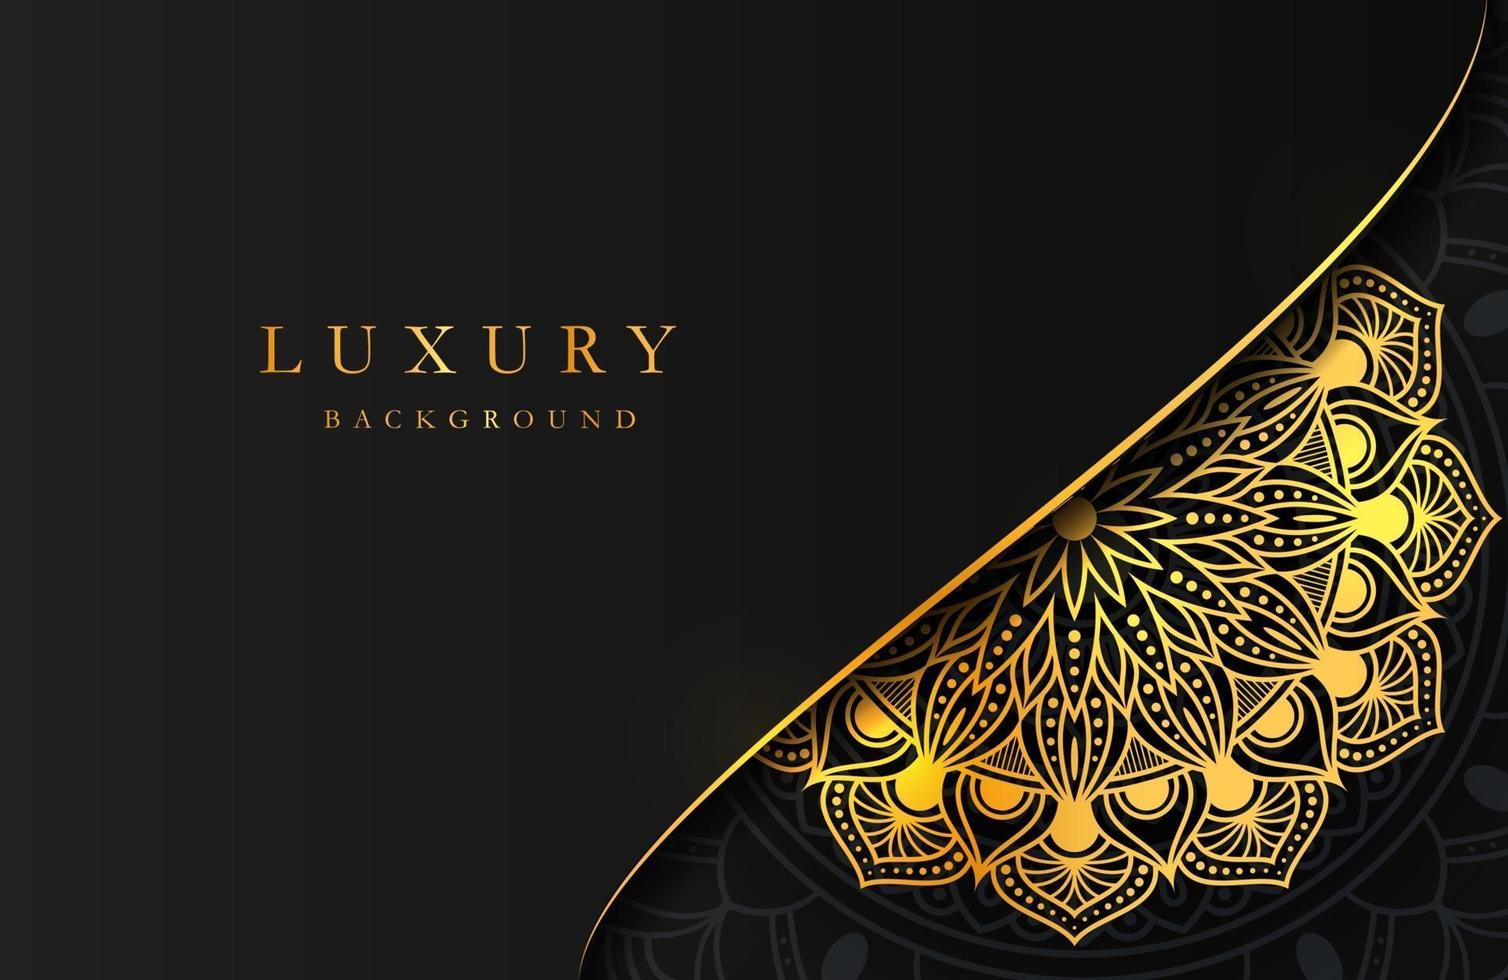 luxe achtergrond met glinsterende gouden islamitische arabesk ornament op donkere ondergrond vector